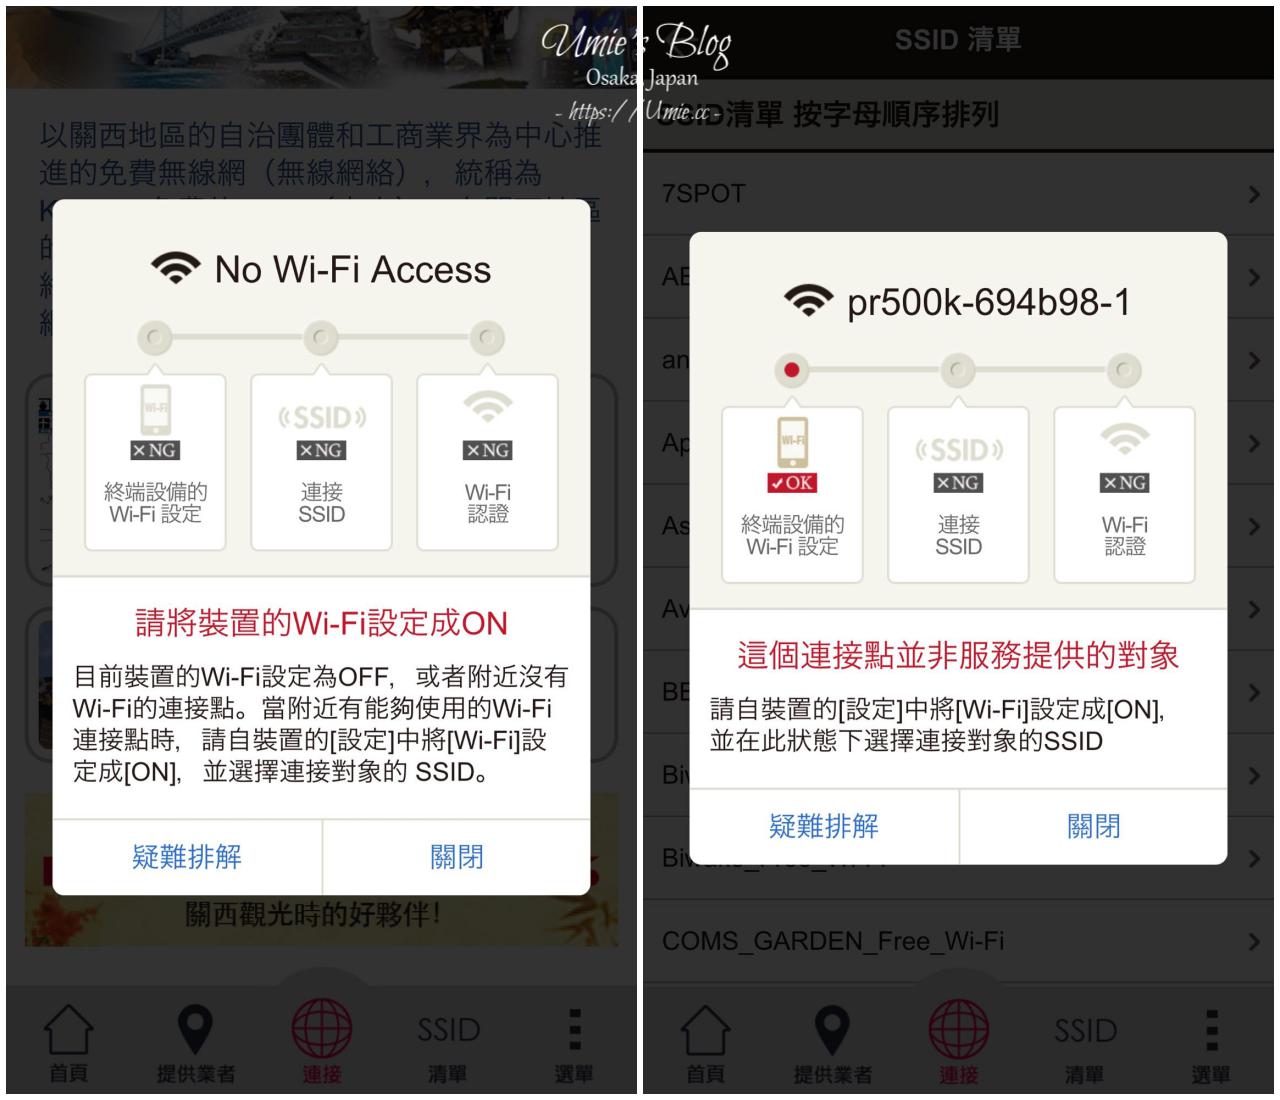 大阪關西免費無限網路 Free Wi-Fi APP 推薦|京都/神戶/奈良/關西地區超過一萬個免費網路連線點超方便！